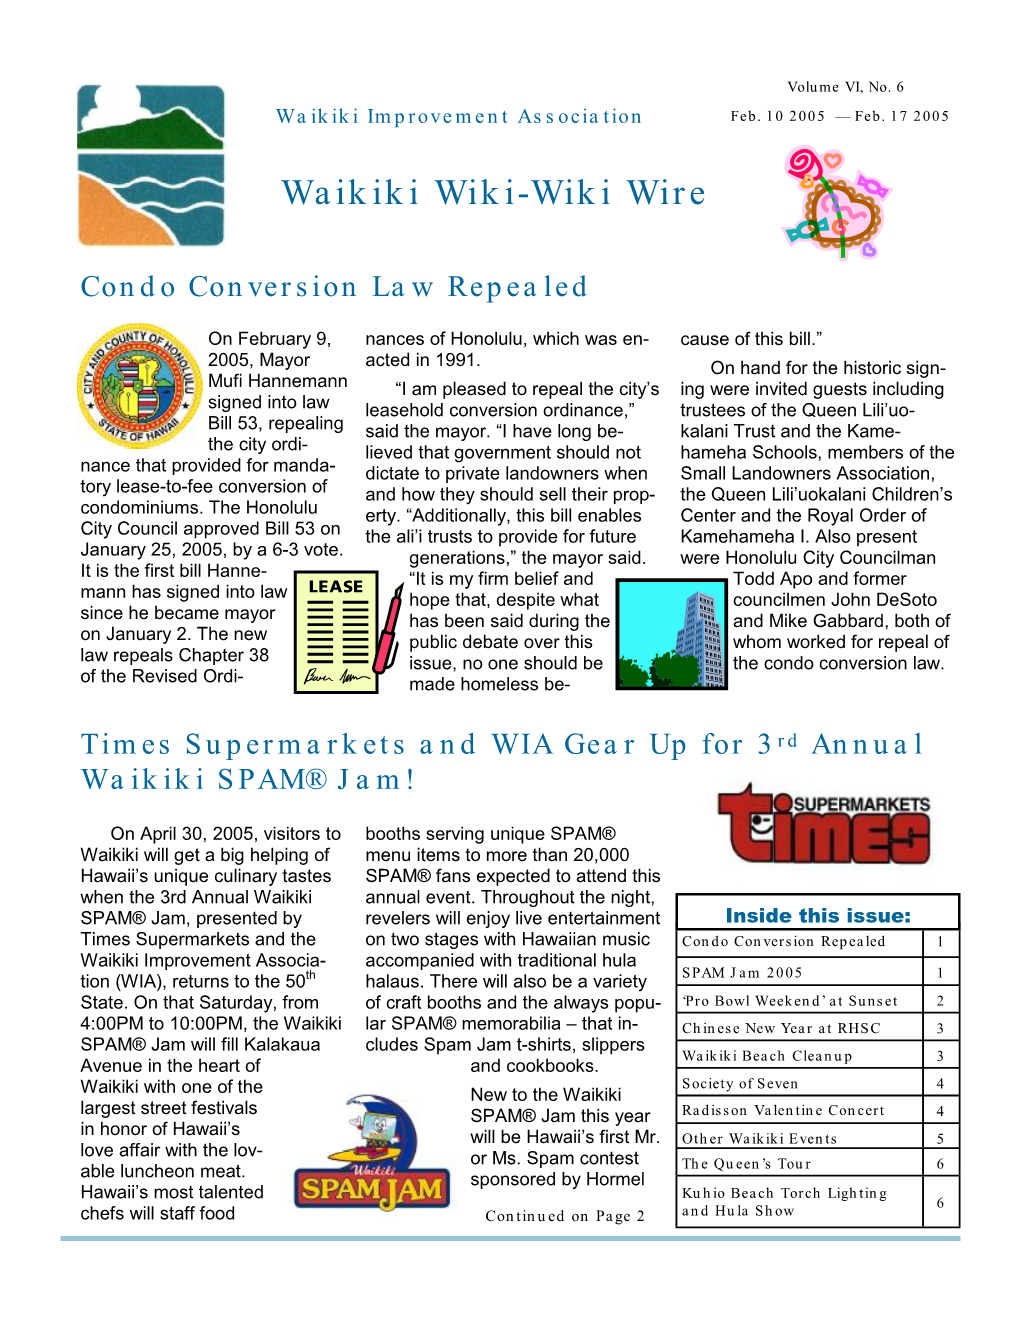 Waikiki Wiki-Wiki Wire